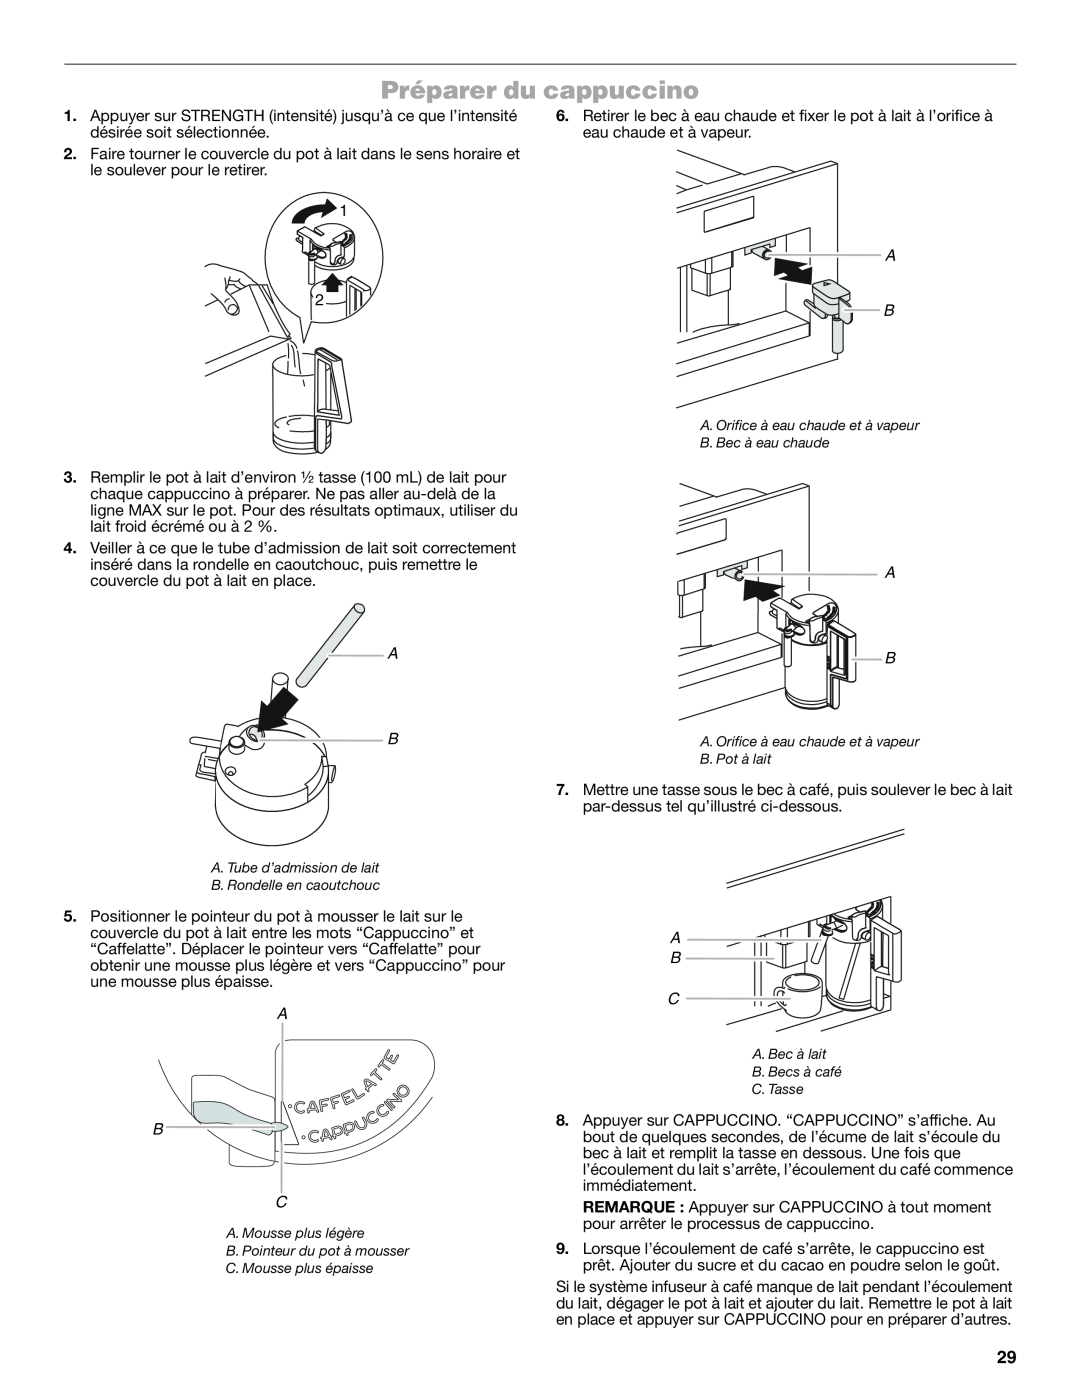 Jenn-Air JBC7624BS manual Préparer du cappuccino, A B C 